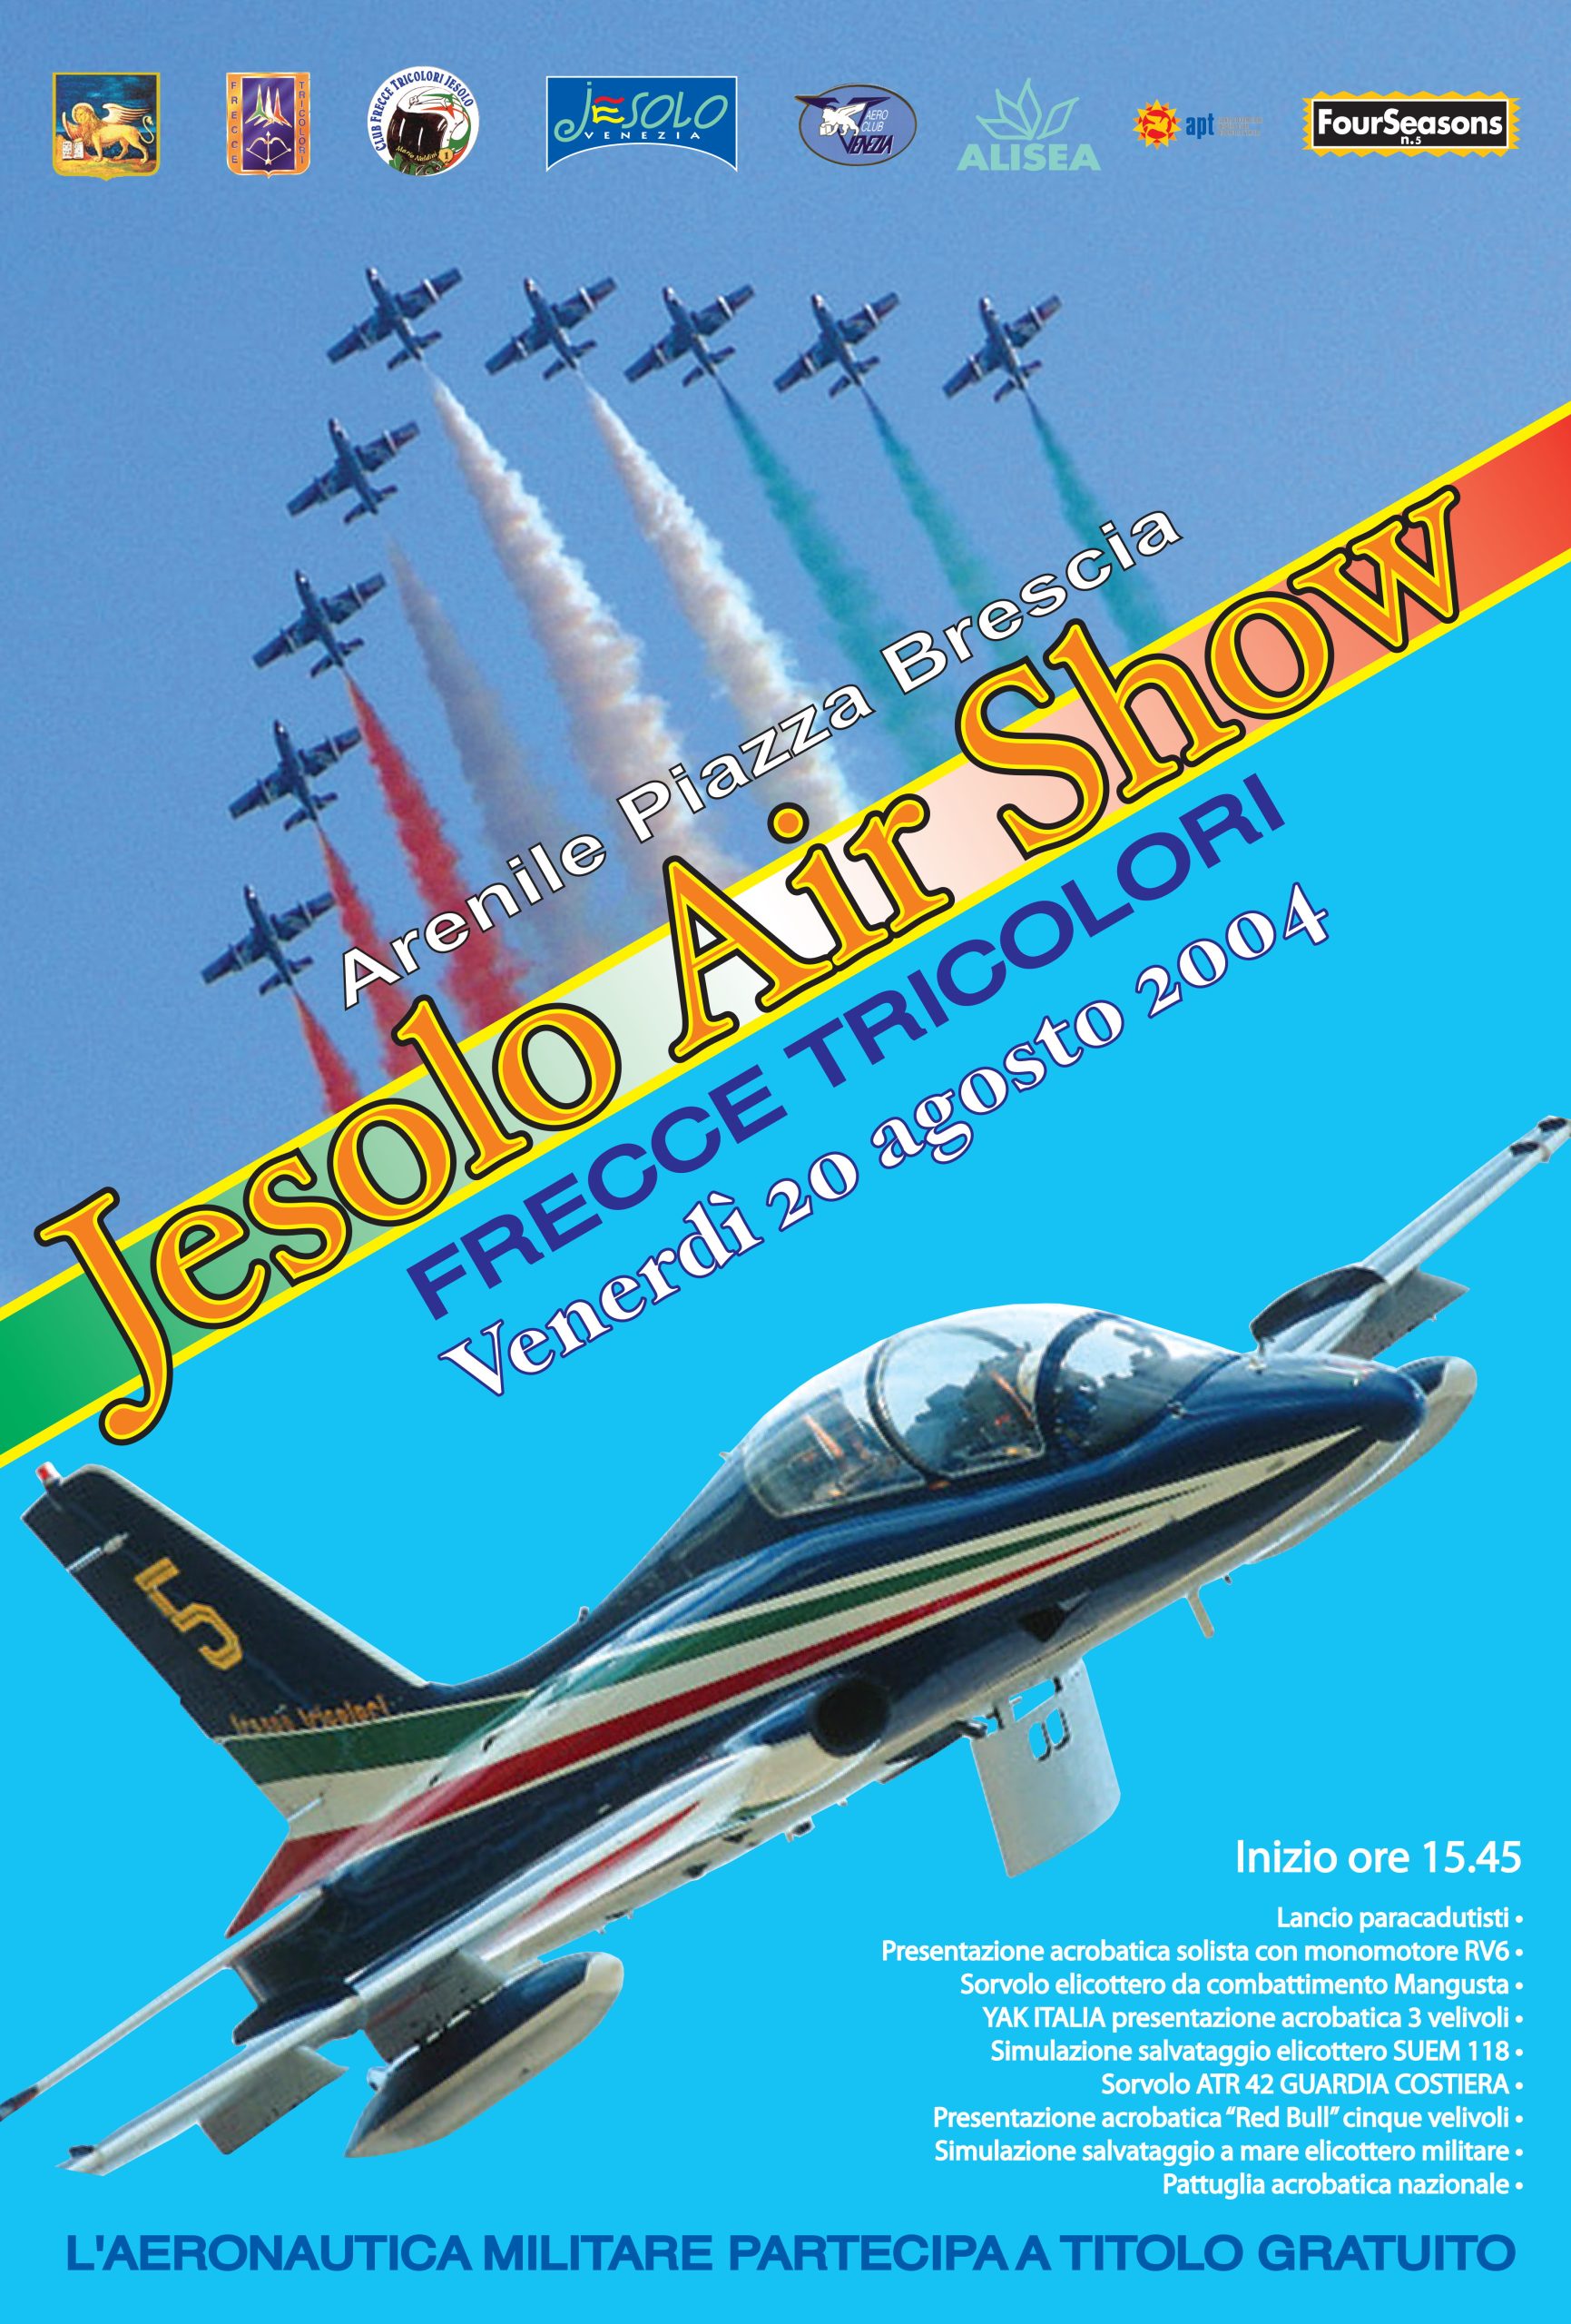 Jesolo Air Show